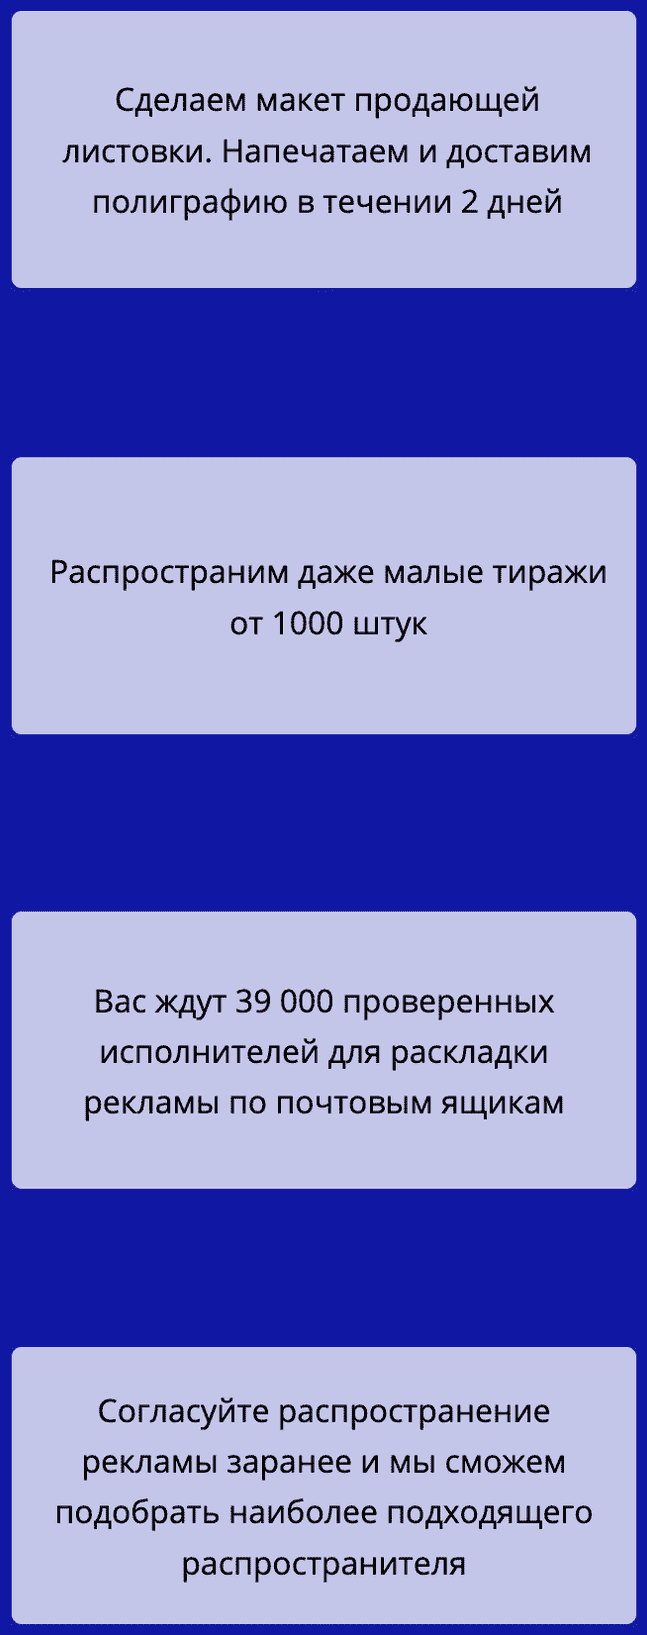 Распространение листовок по почтовым ящикам в СПб описание услуг